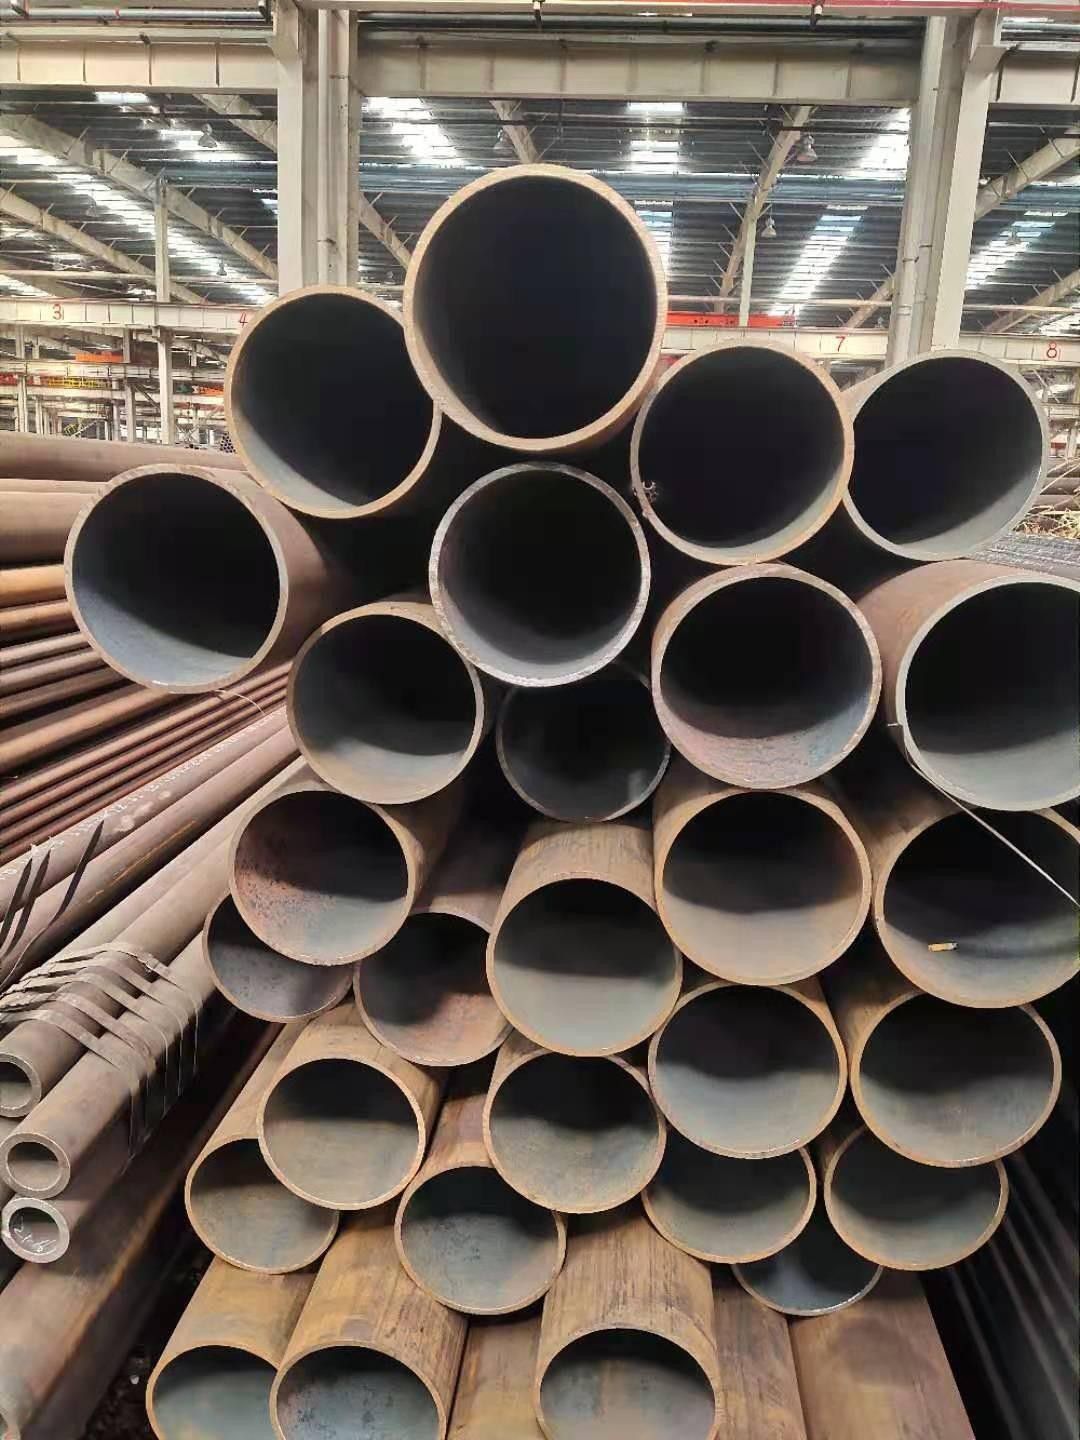 邢台威县Q345B无缝钢管材料的价格正在弱势调整